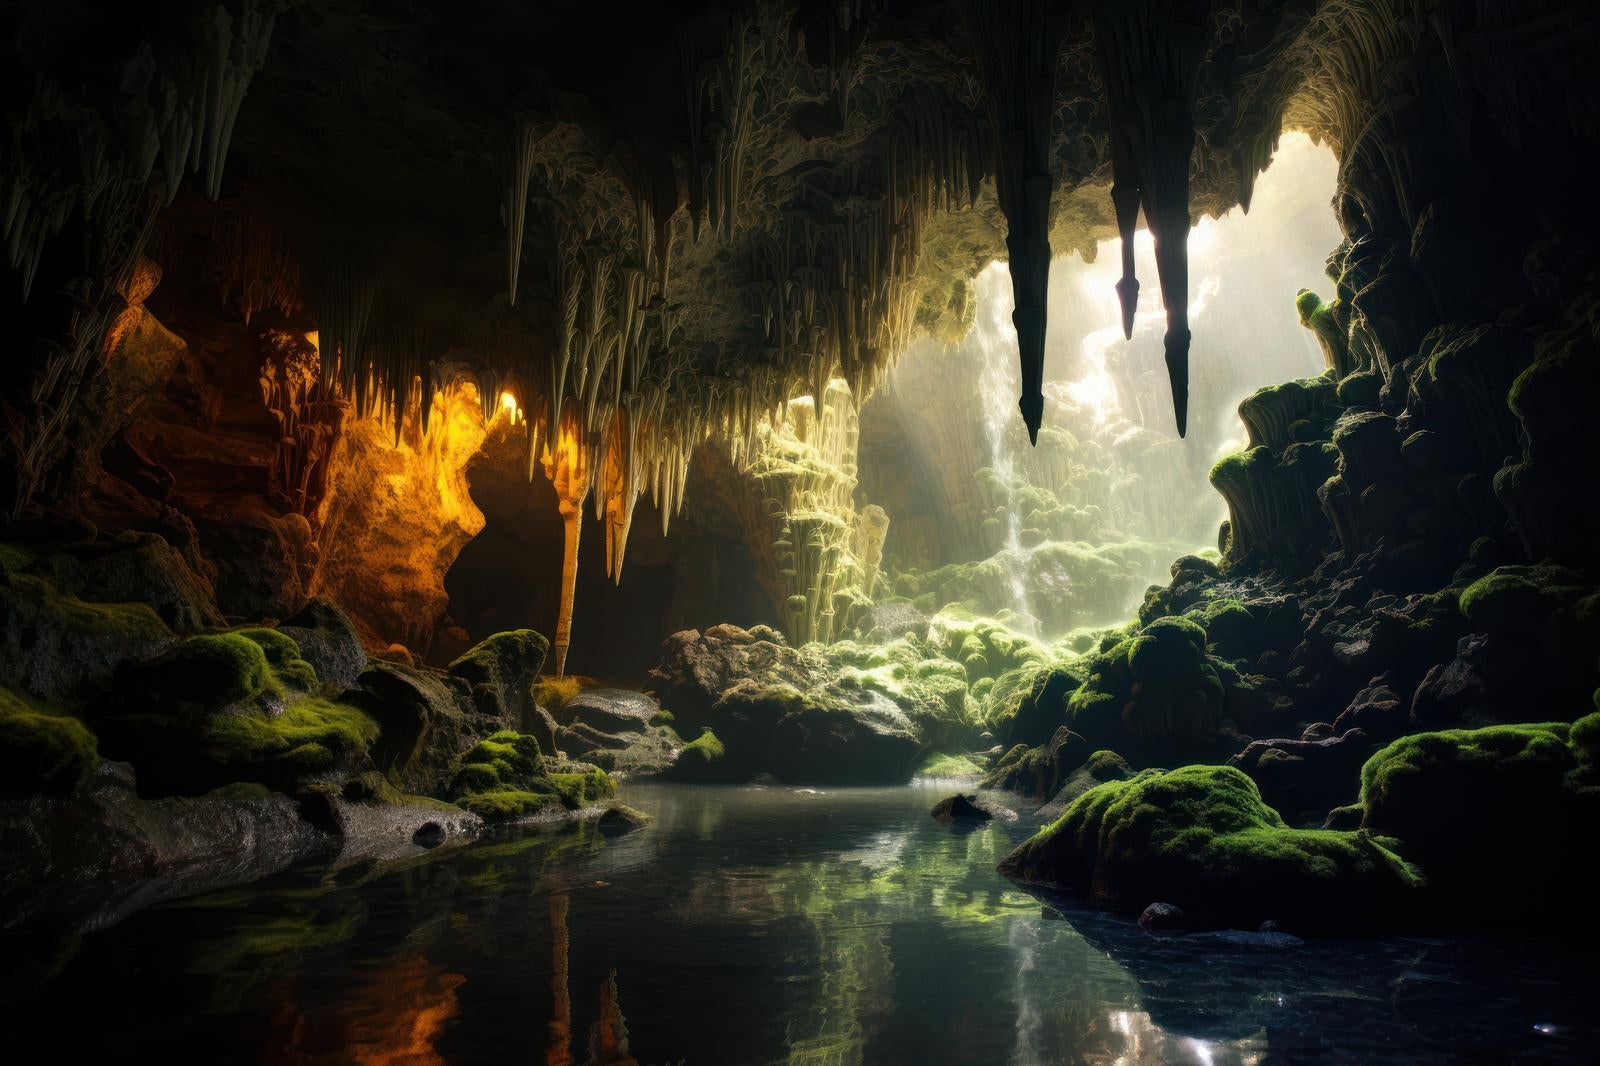 「地下世界の鍾乳洞と水源の風景写真」の写真